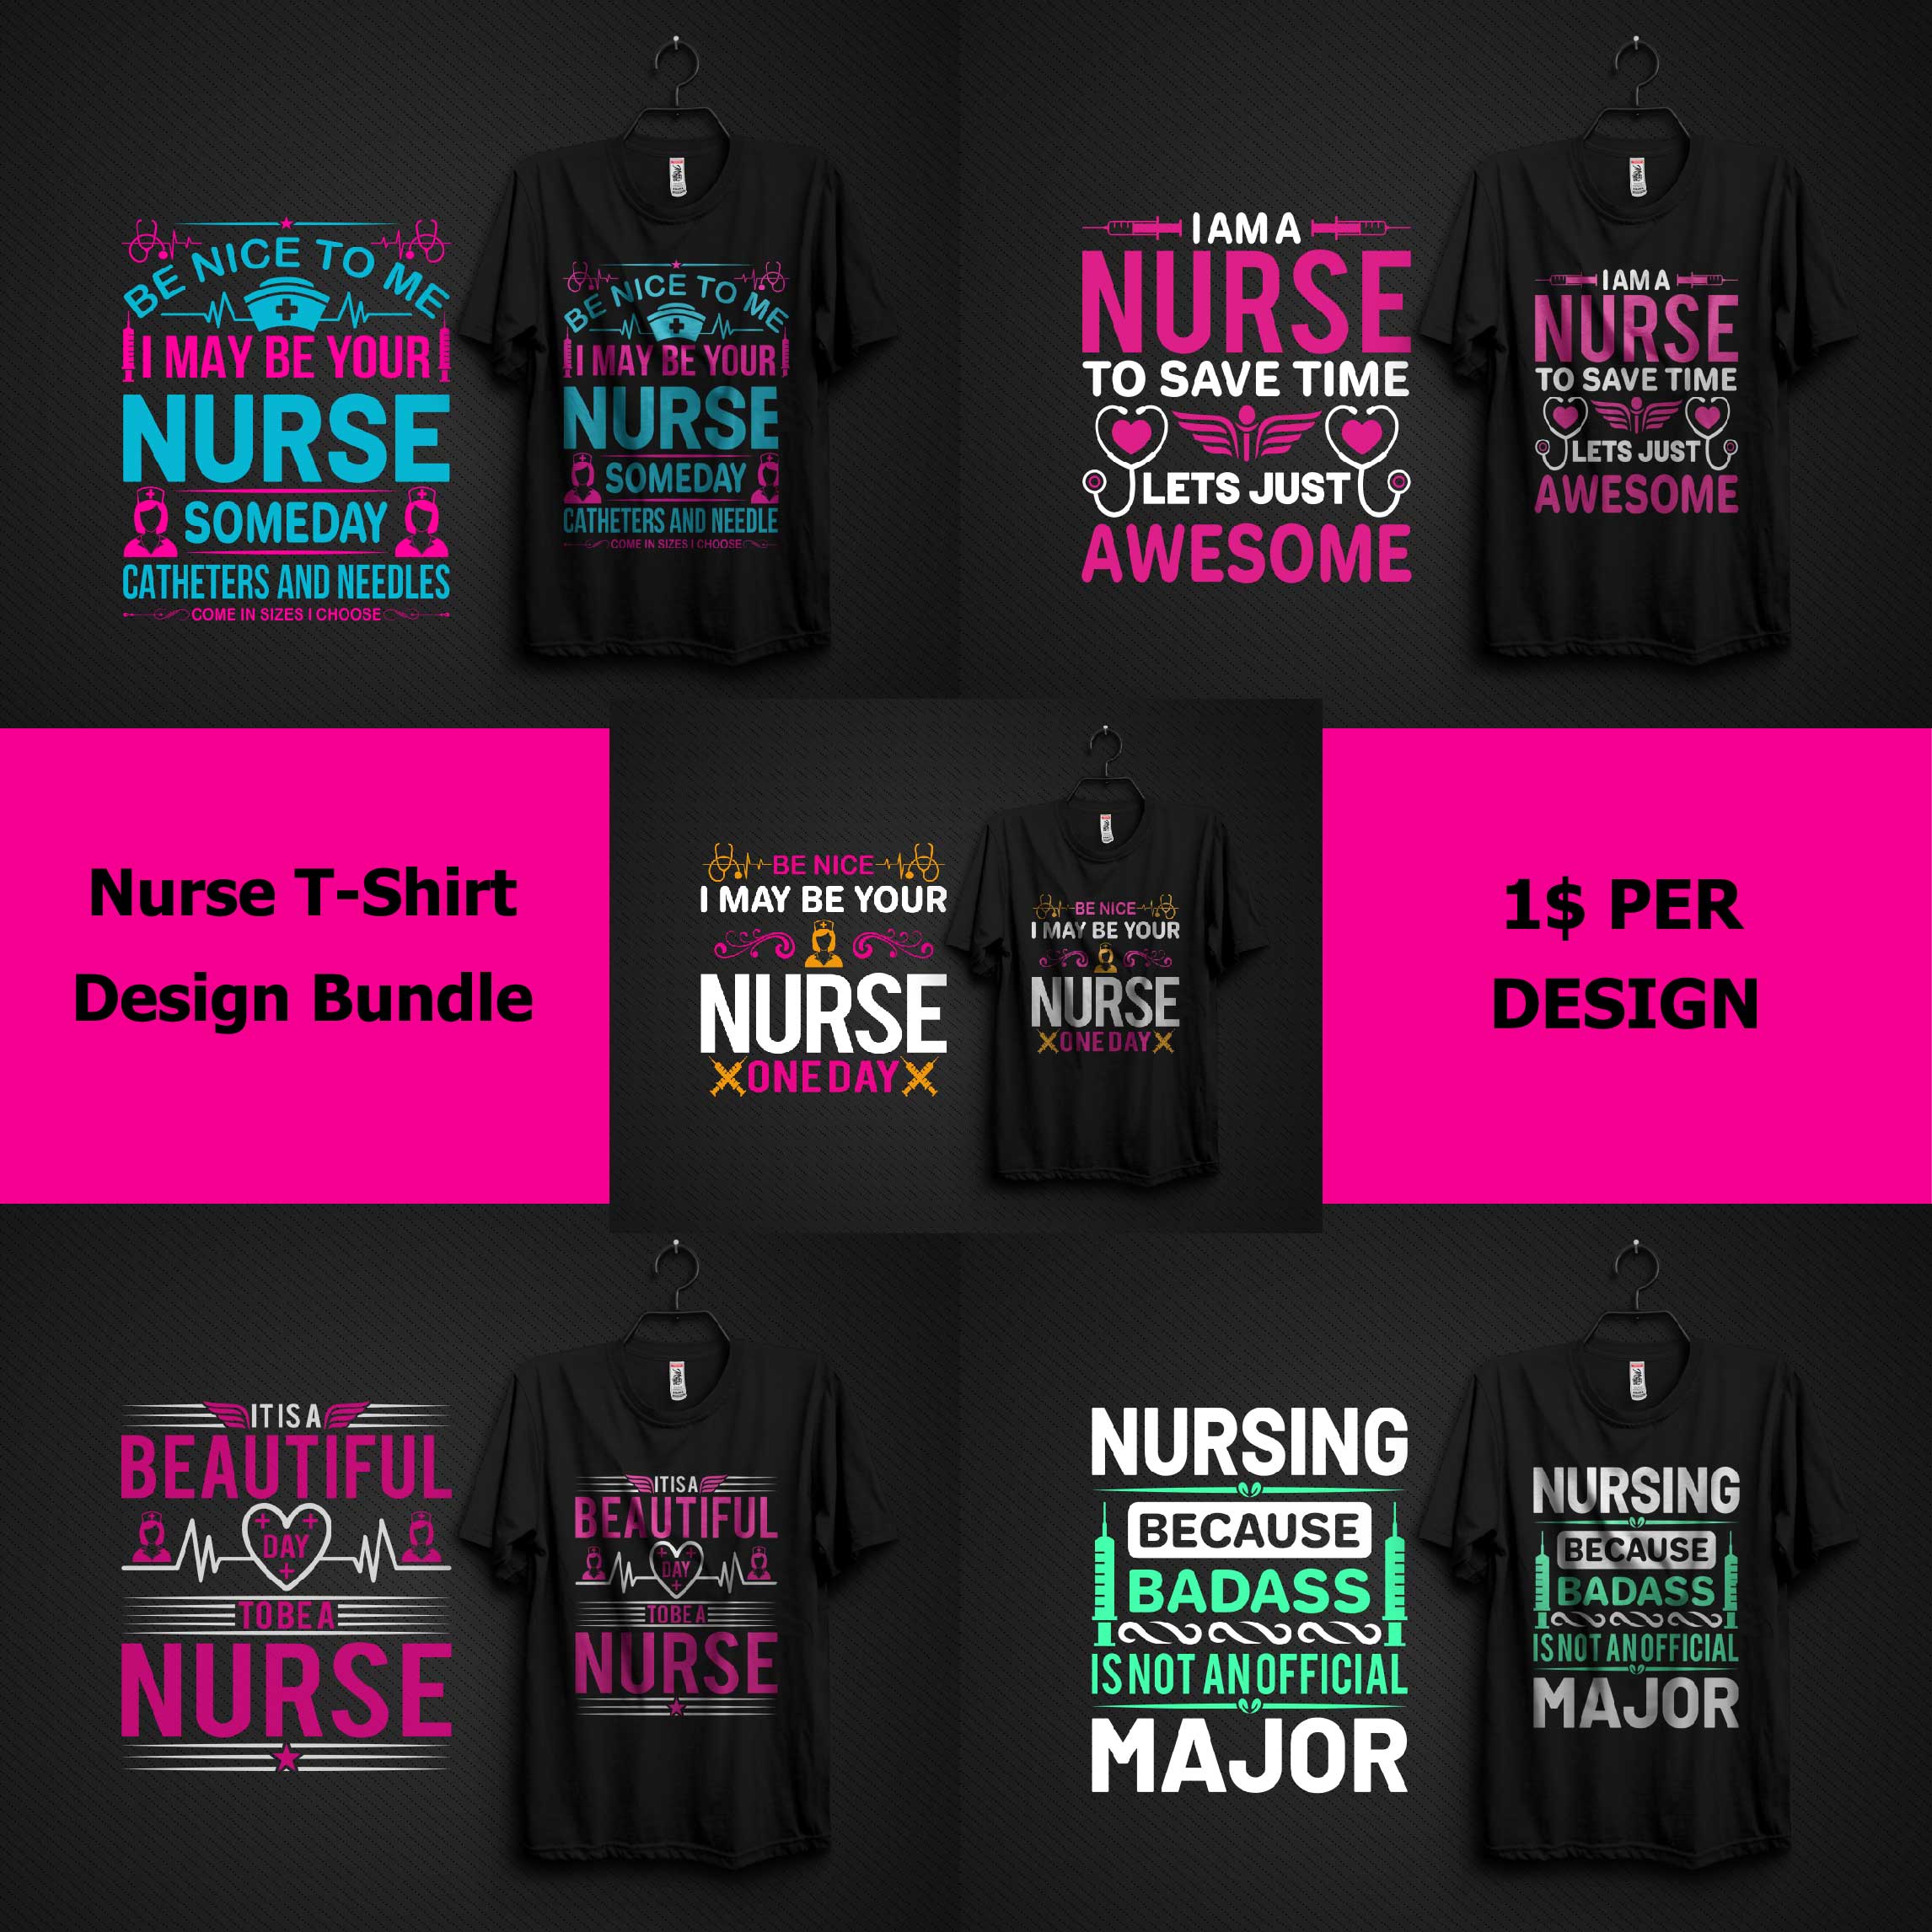 T-Shirt Best Nurse Design Bundle cover image.